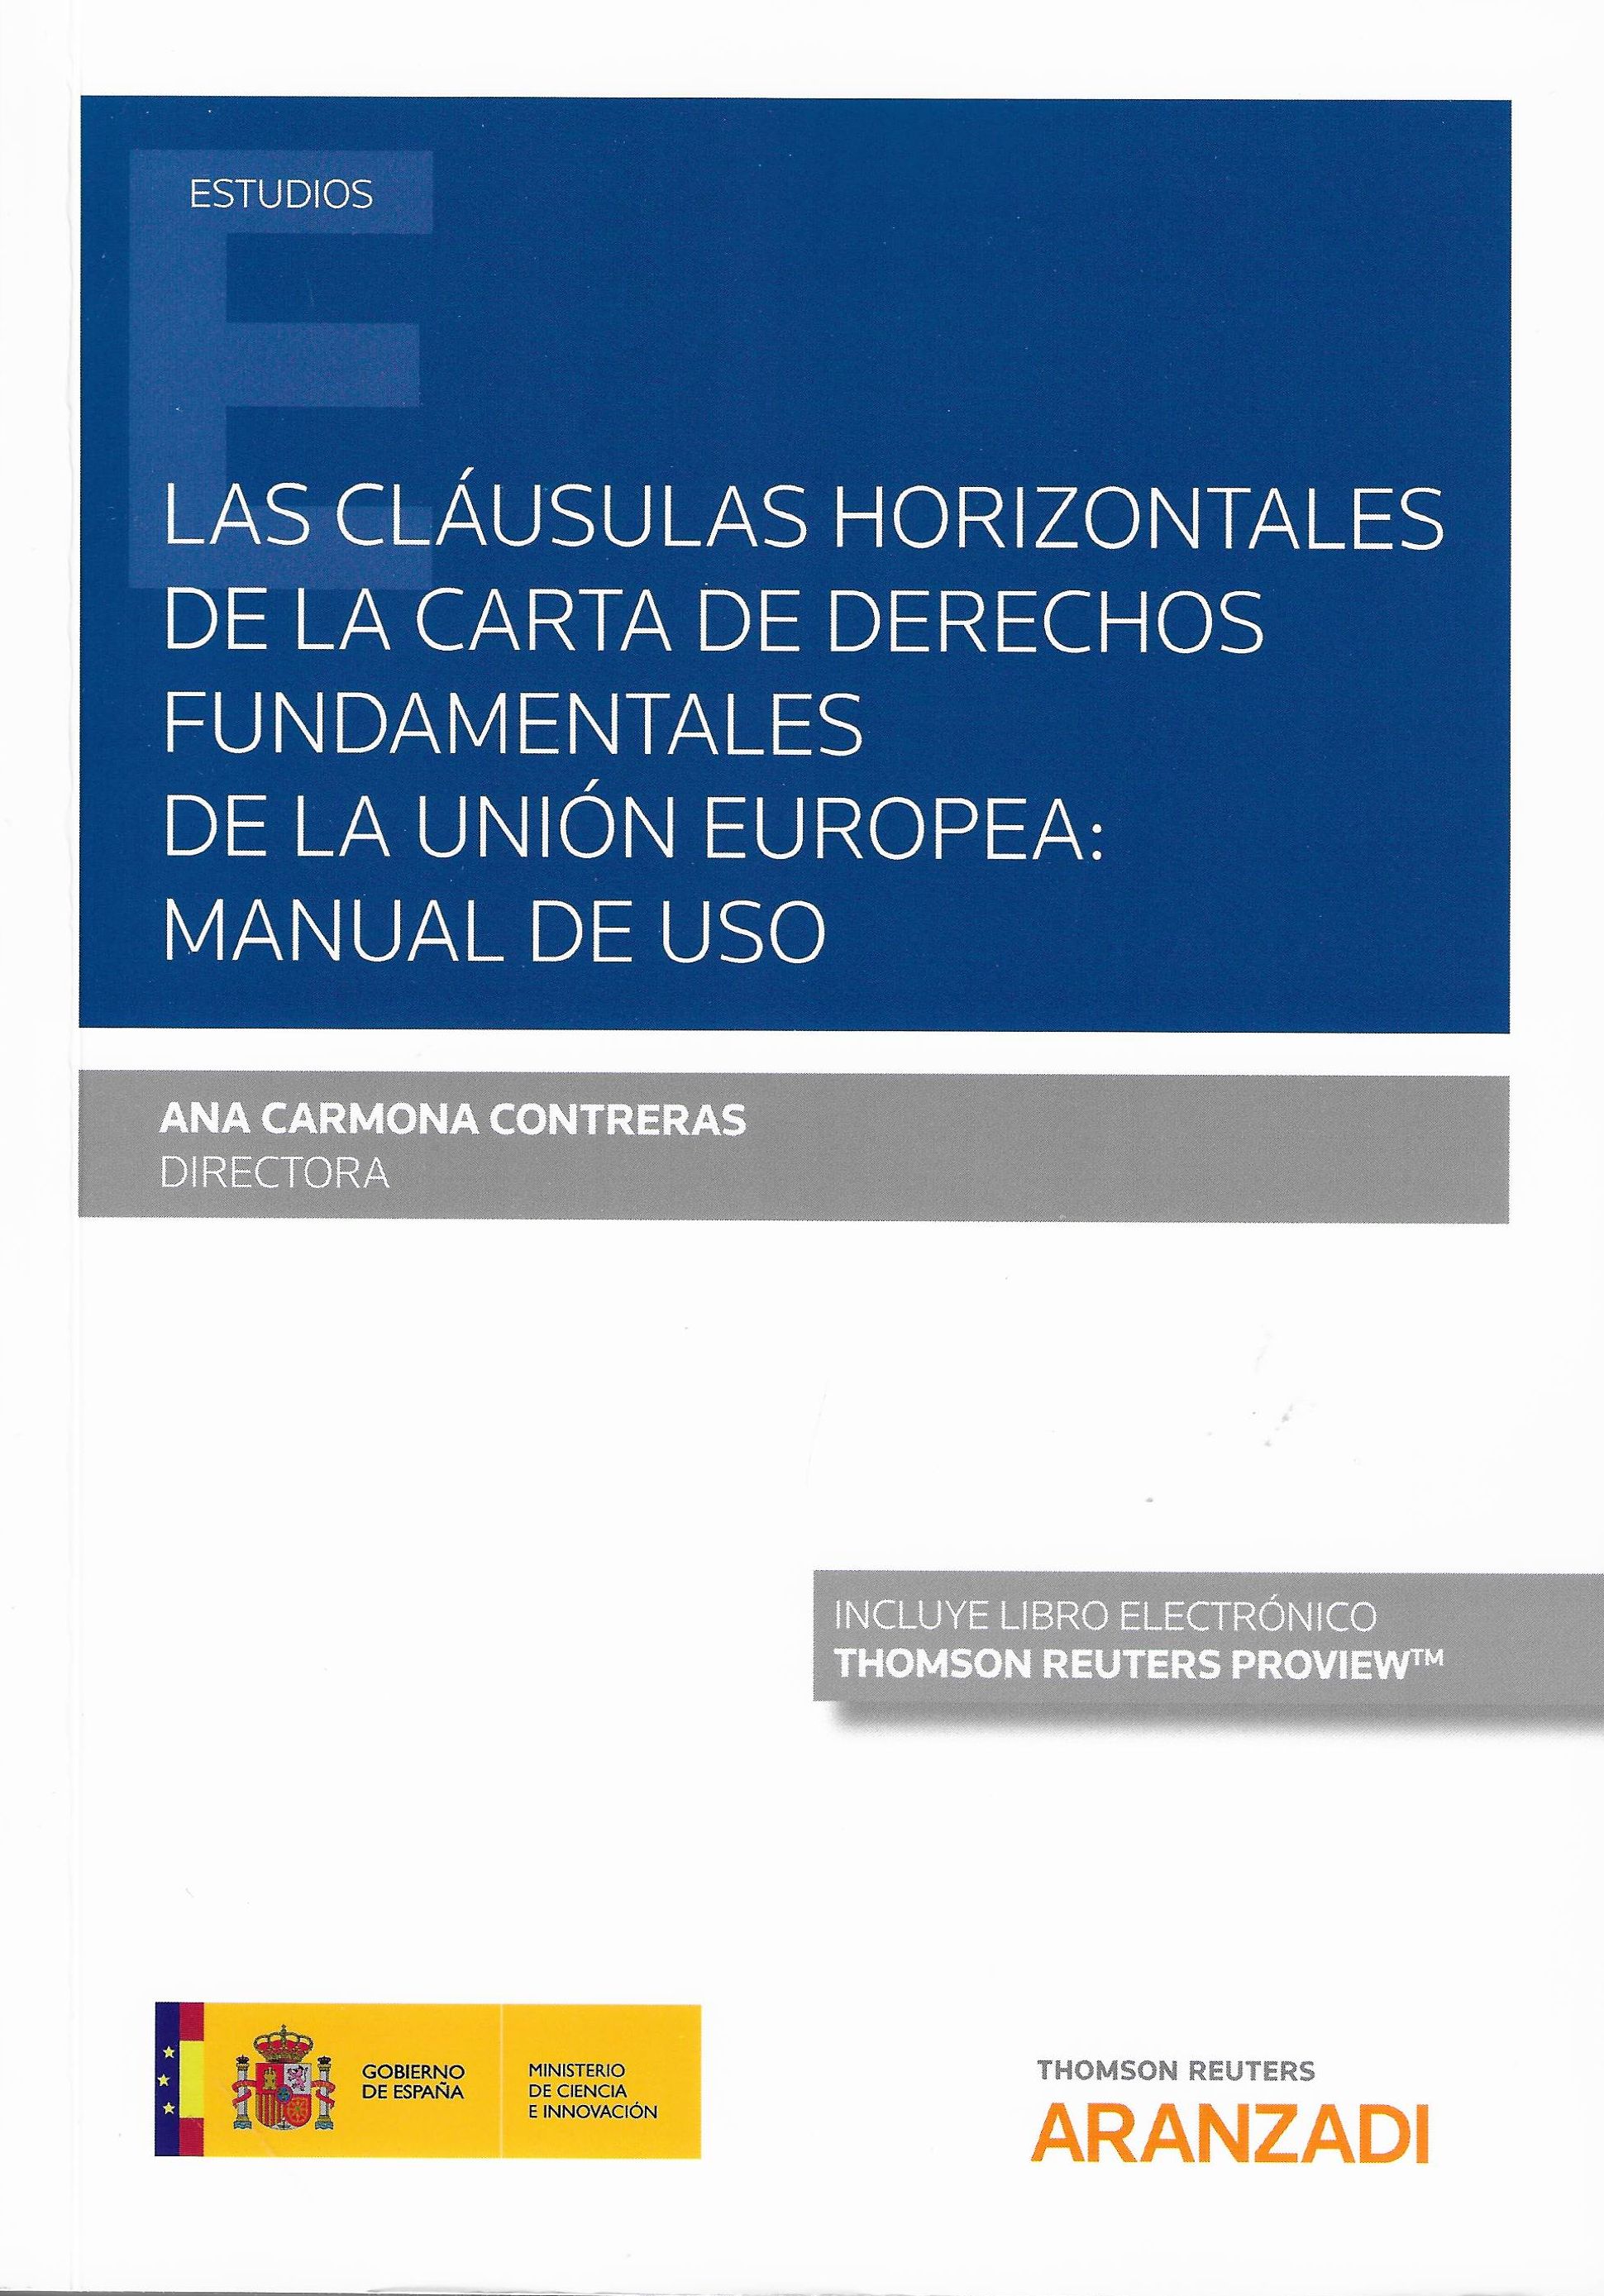 Imagen de portada del libro Las cláusulas horizontales de la Carta de Derechos Fundamentales de la Unión Europea: Manual de uso